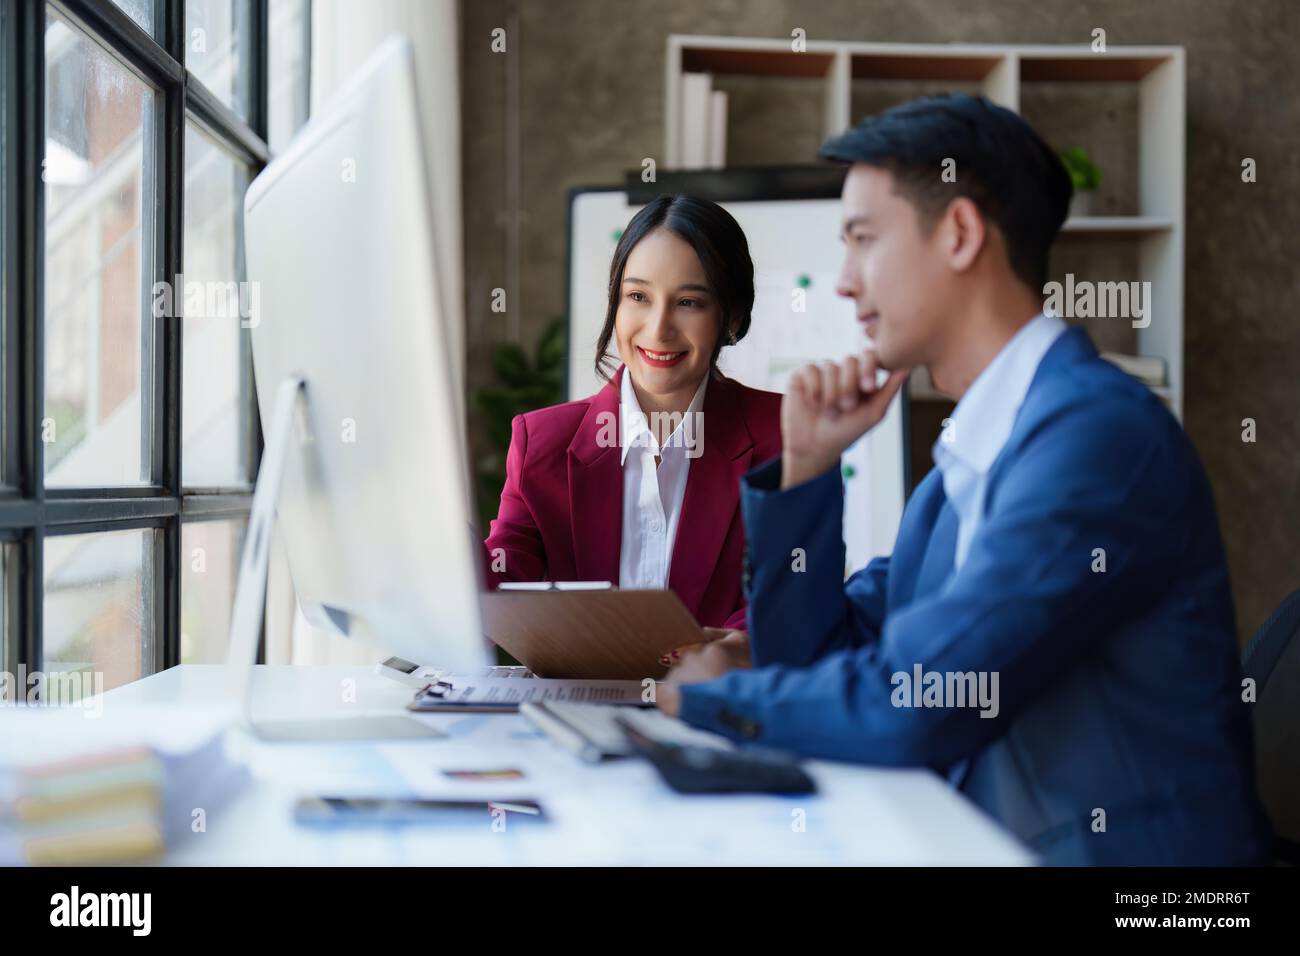 Belle femme d'affaires consultant parlant avec un homme d'affaires asiatique dans la salle de réunion avec le nouveau marché financier. Concept comptable Banque D'Images